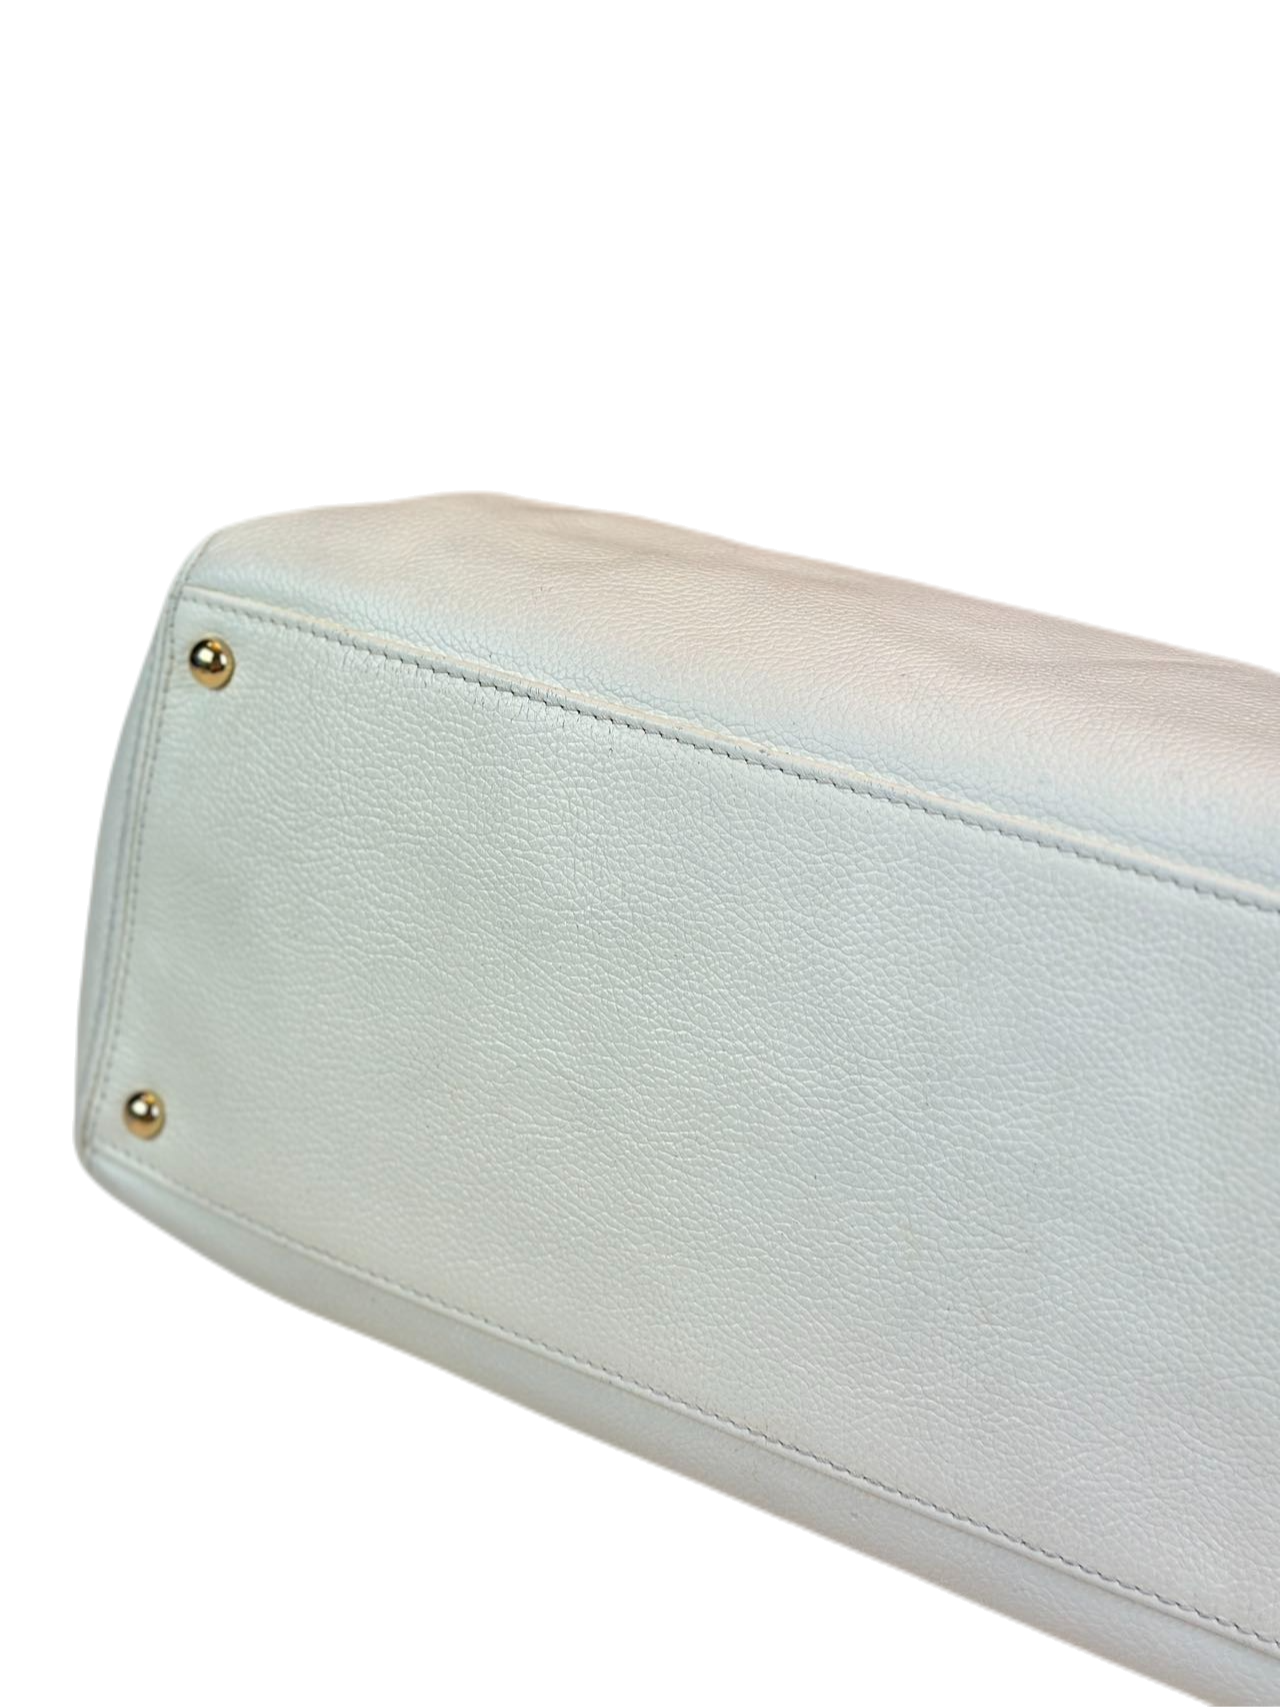 Preloved Chanel Vintage White Leather Handbag Satchel